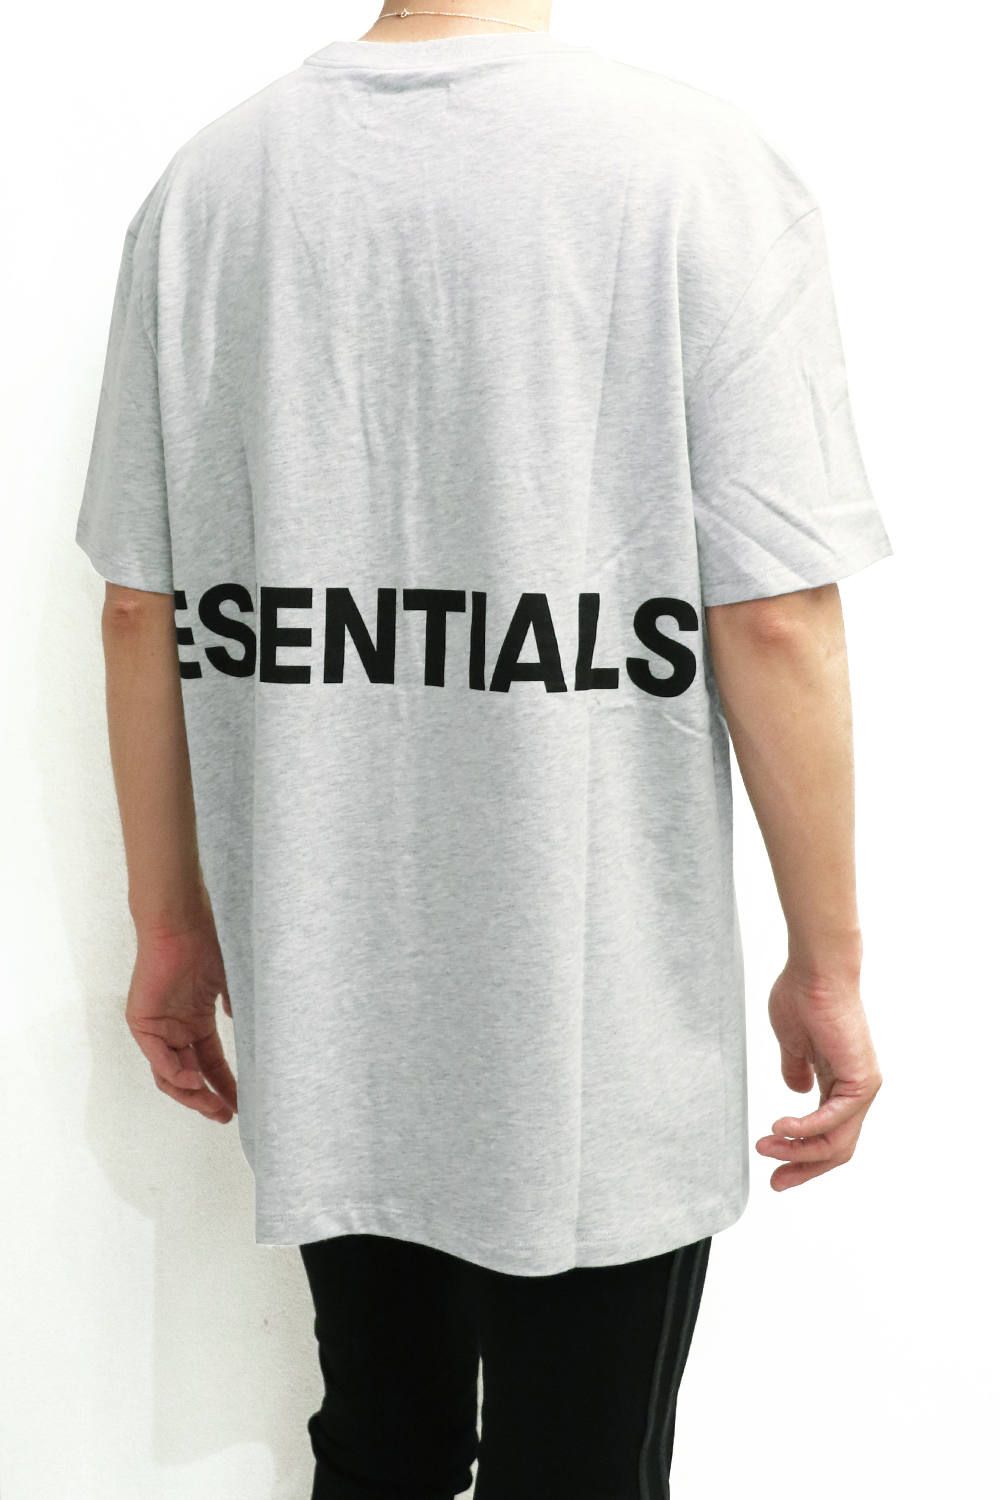 XS FOG Essentials Boxy T-Shirt Tee Tシャツ www.krzysztofbialy.com